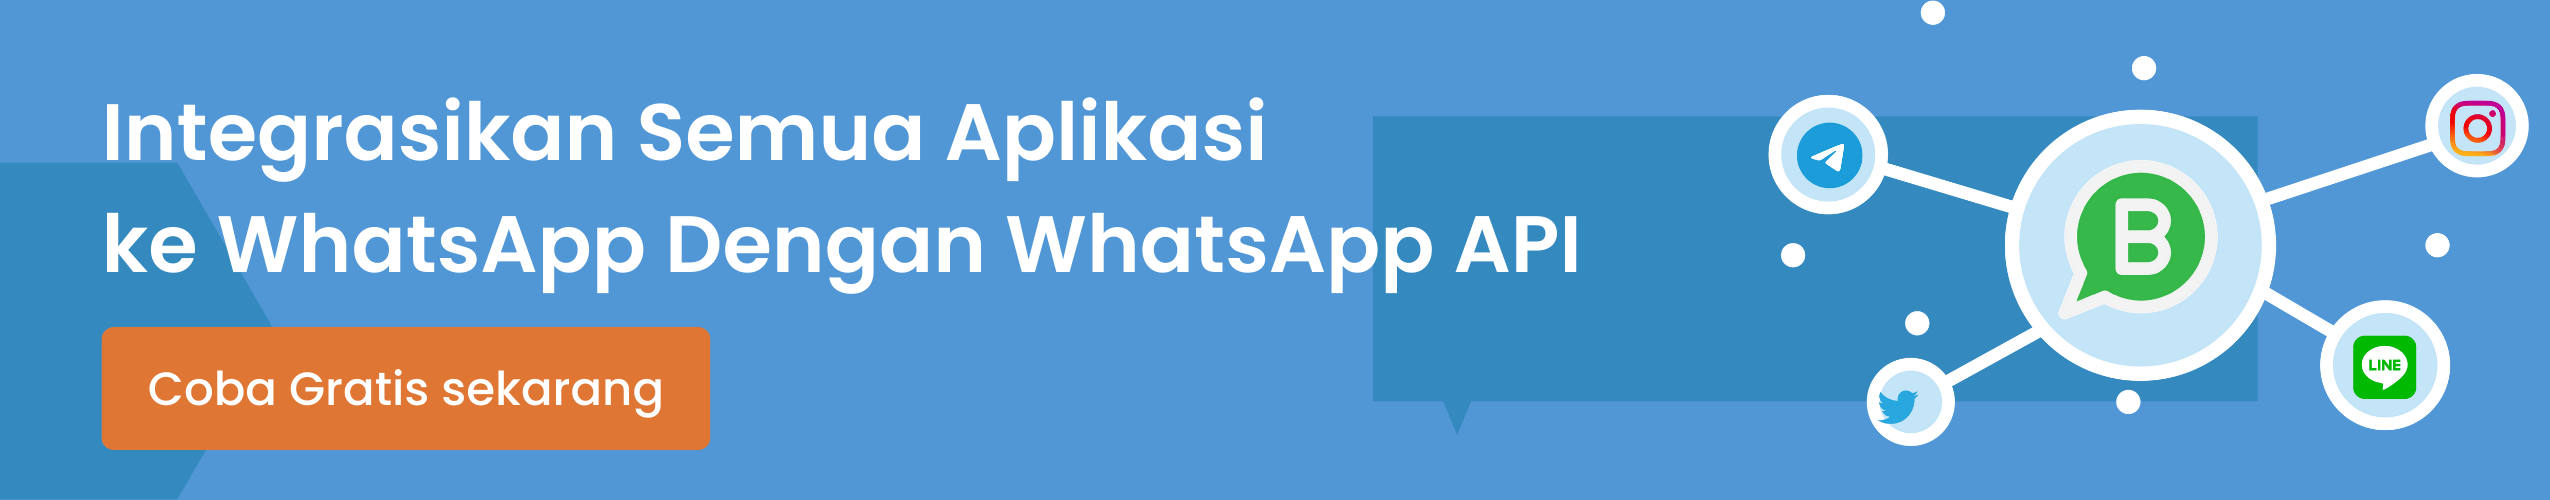 Barantum WhatsApp Partner Terbaik dan Mitra Resmi WhatsApp Terpercaya di Indonesia